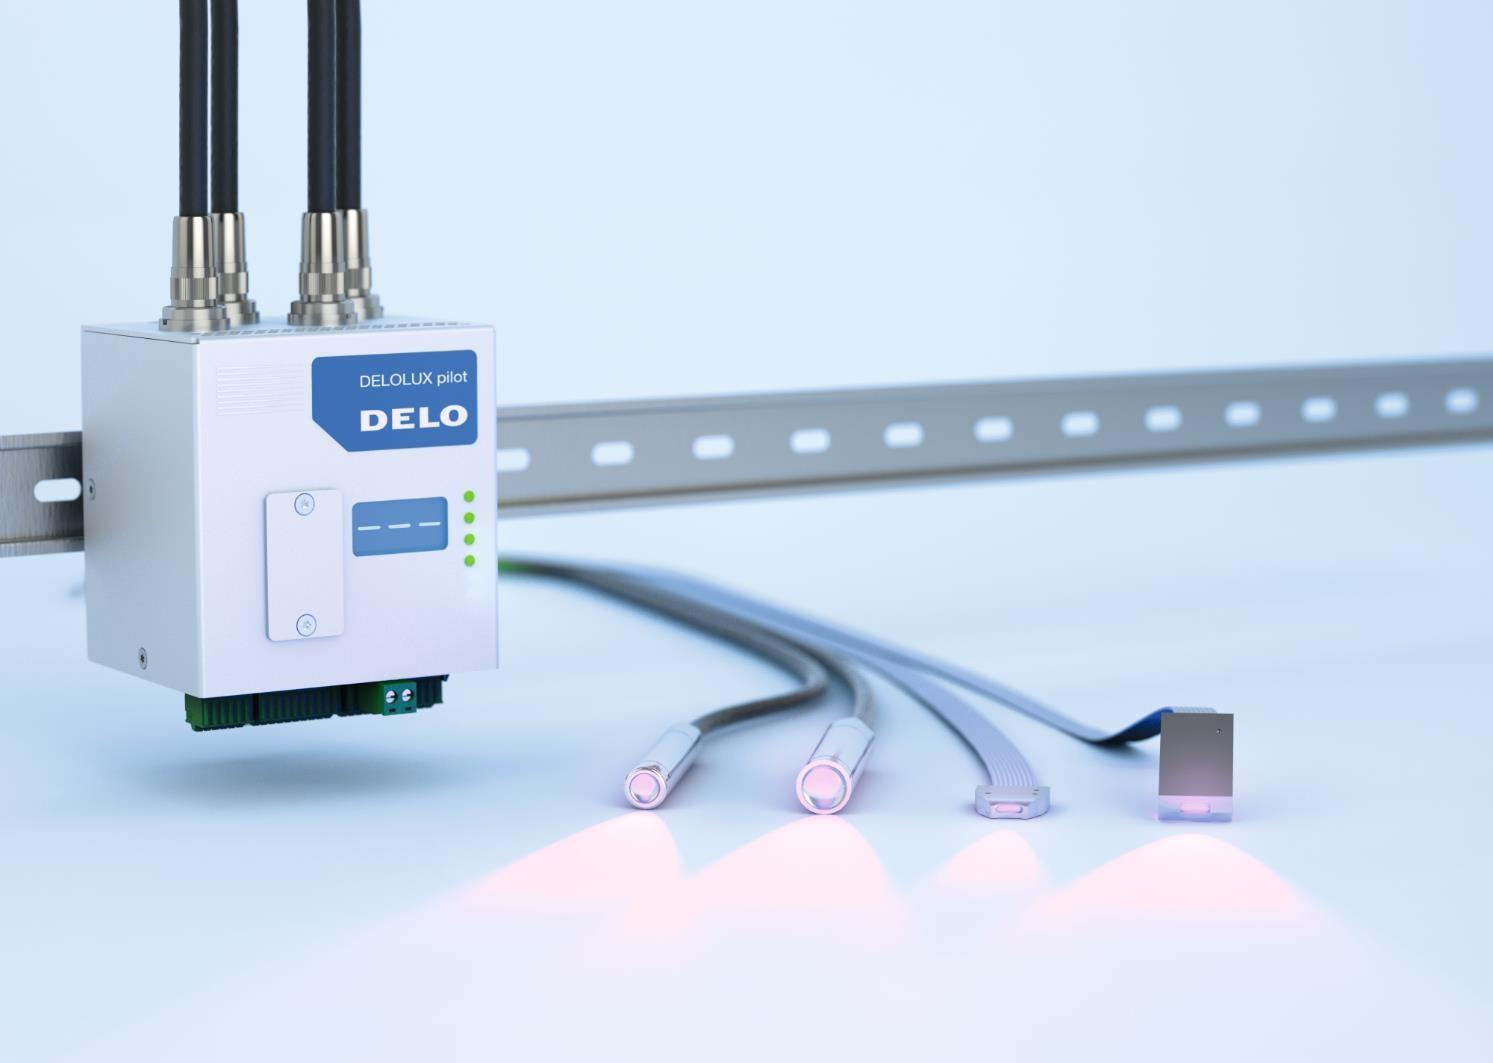 Hướng dẫn lựa chọn bộ điều khiển DELOLUX pilot S4i hoặc S4T cho đèn chiếu xạ UV dạng điểm DELOLUX 50